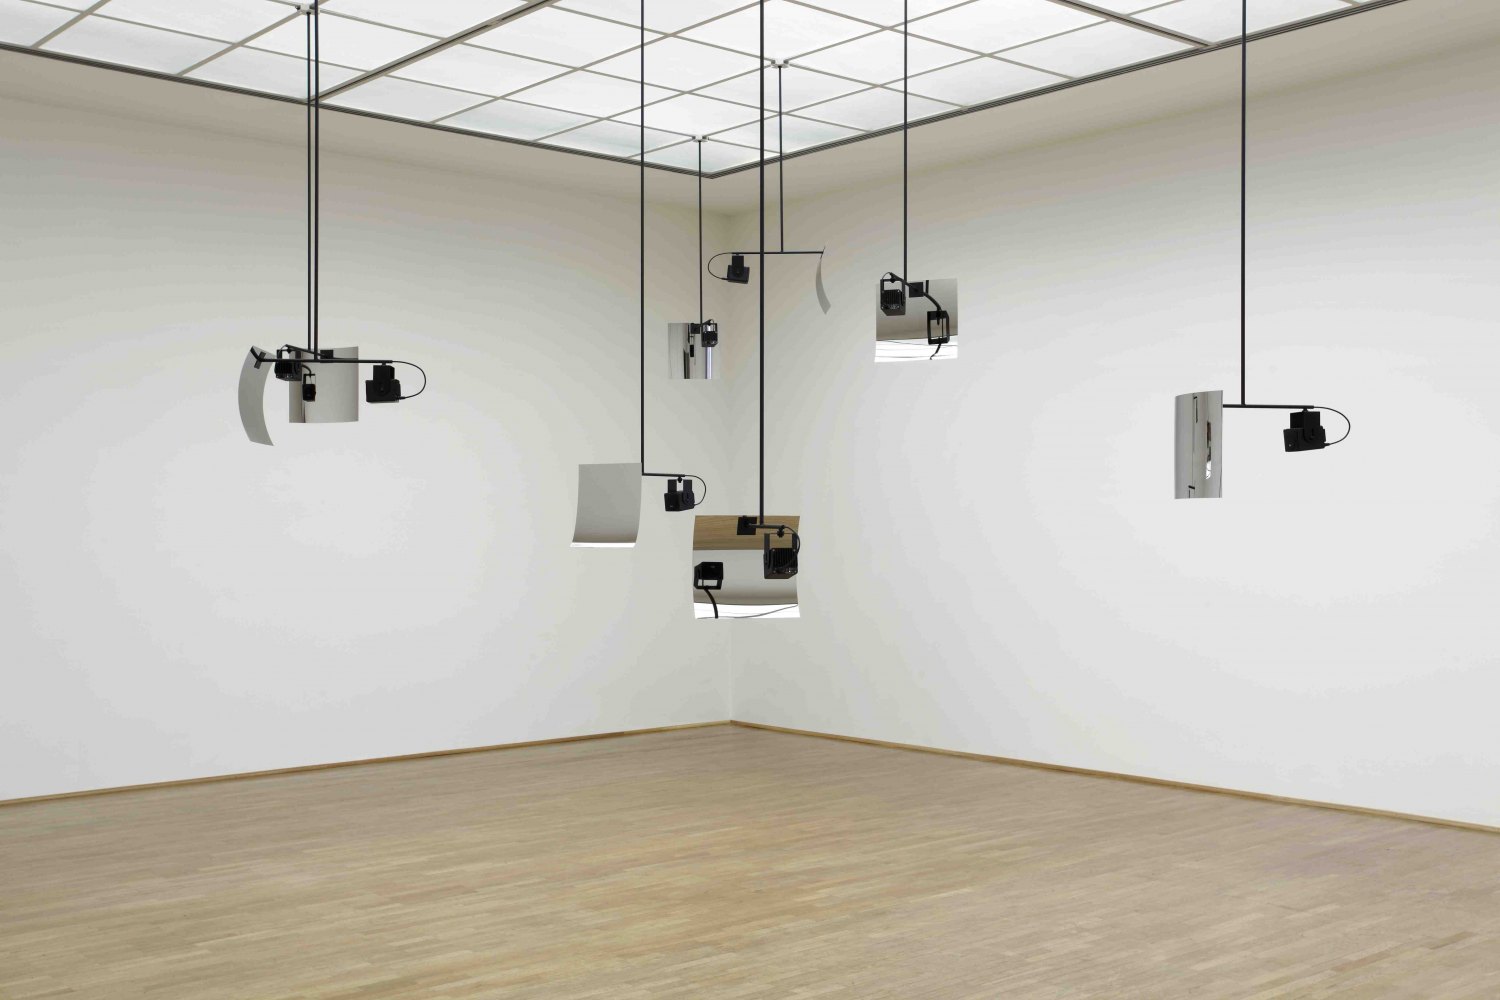 Florian Hecker, Event, Stream, Object Installation view, MMK - Museum für Moderne Kunst, Frankfurt 2010